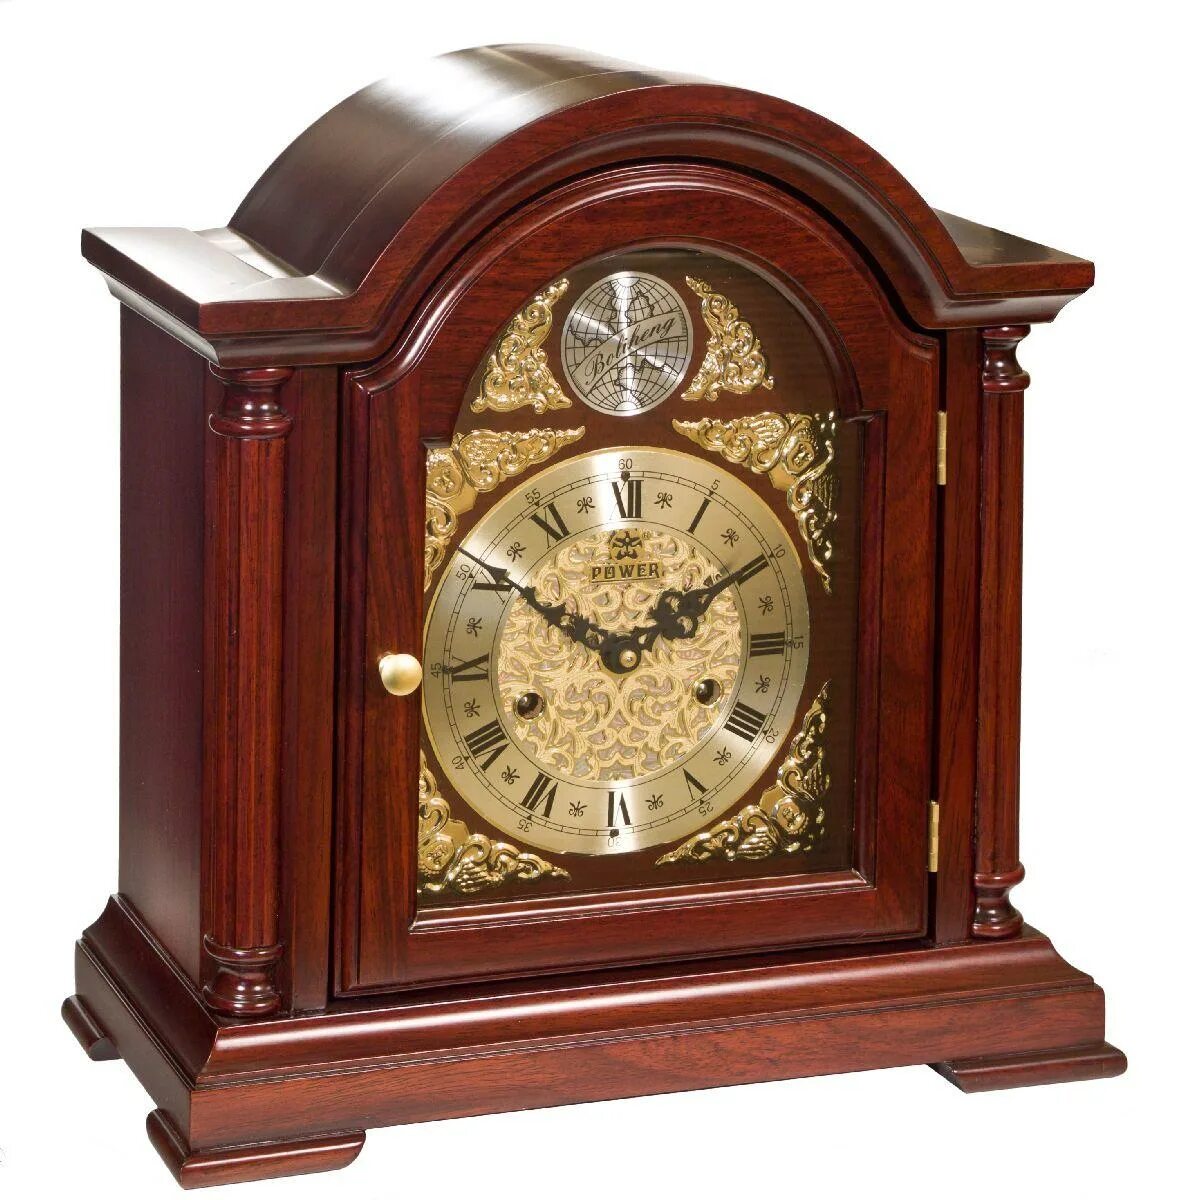 Часы каминные Vostok. Каминные часы т-9728-2 каминные/настольные часы с боем Восток. Механические ЧАСЫЧАСЫ. Старый часы сколько стоит